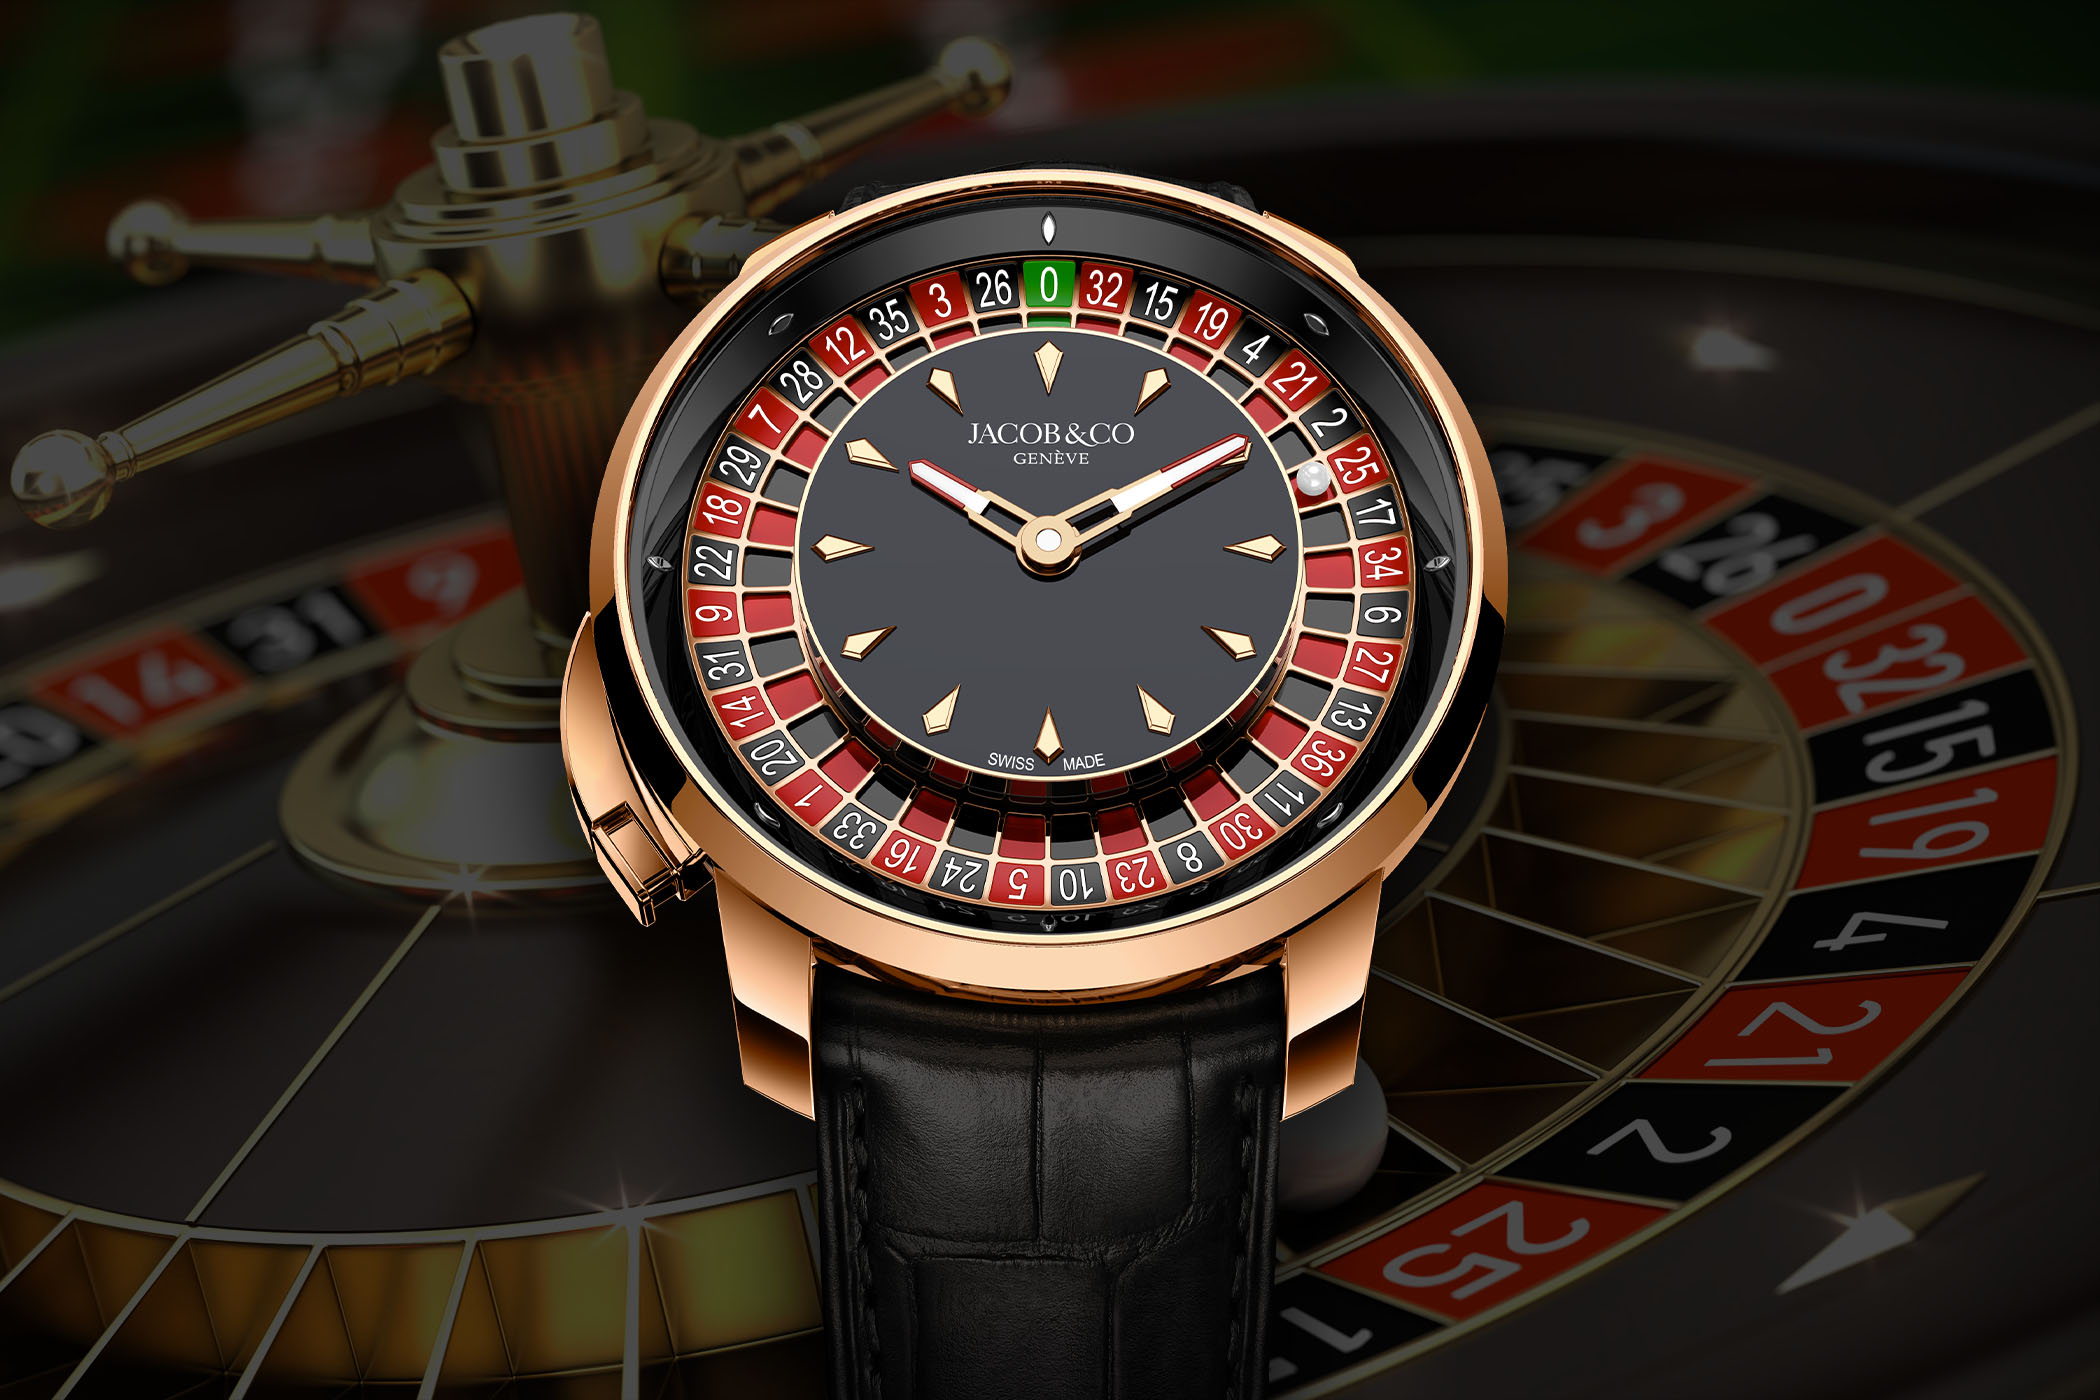 Jacob & Co. giới thiệu một chiếc đồng hồ có vòng quay Roulette Casino mới